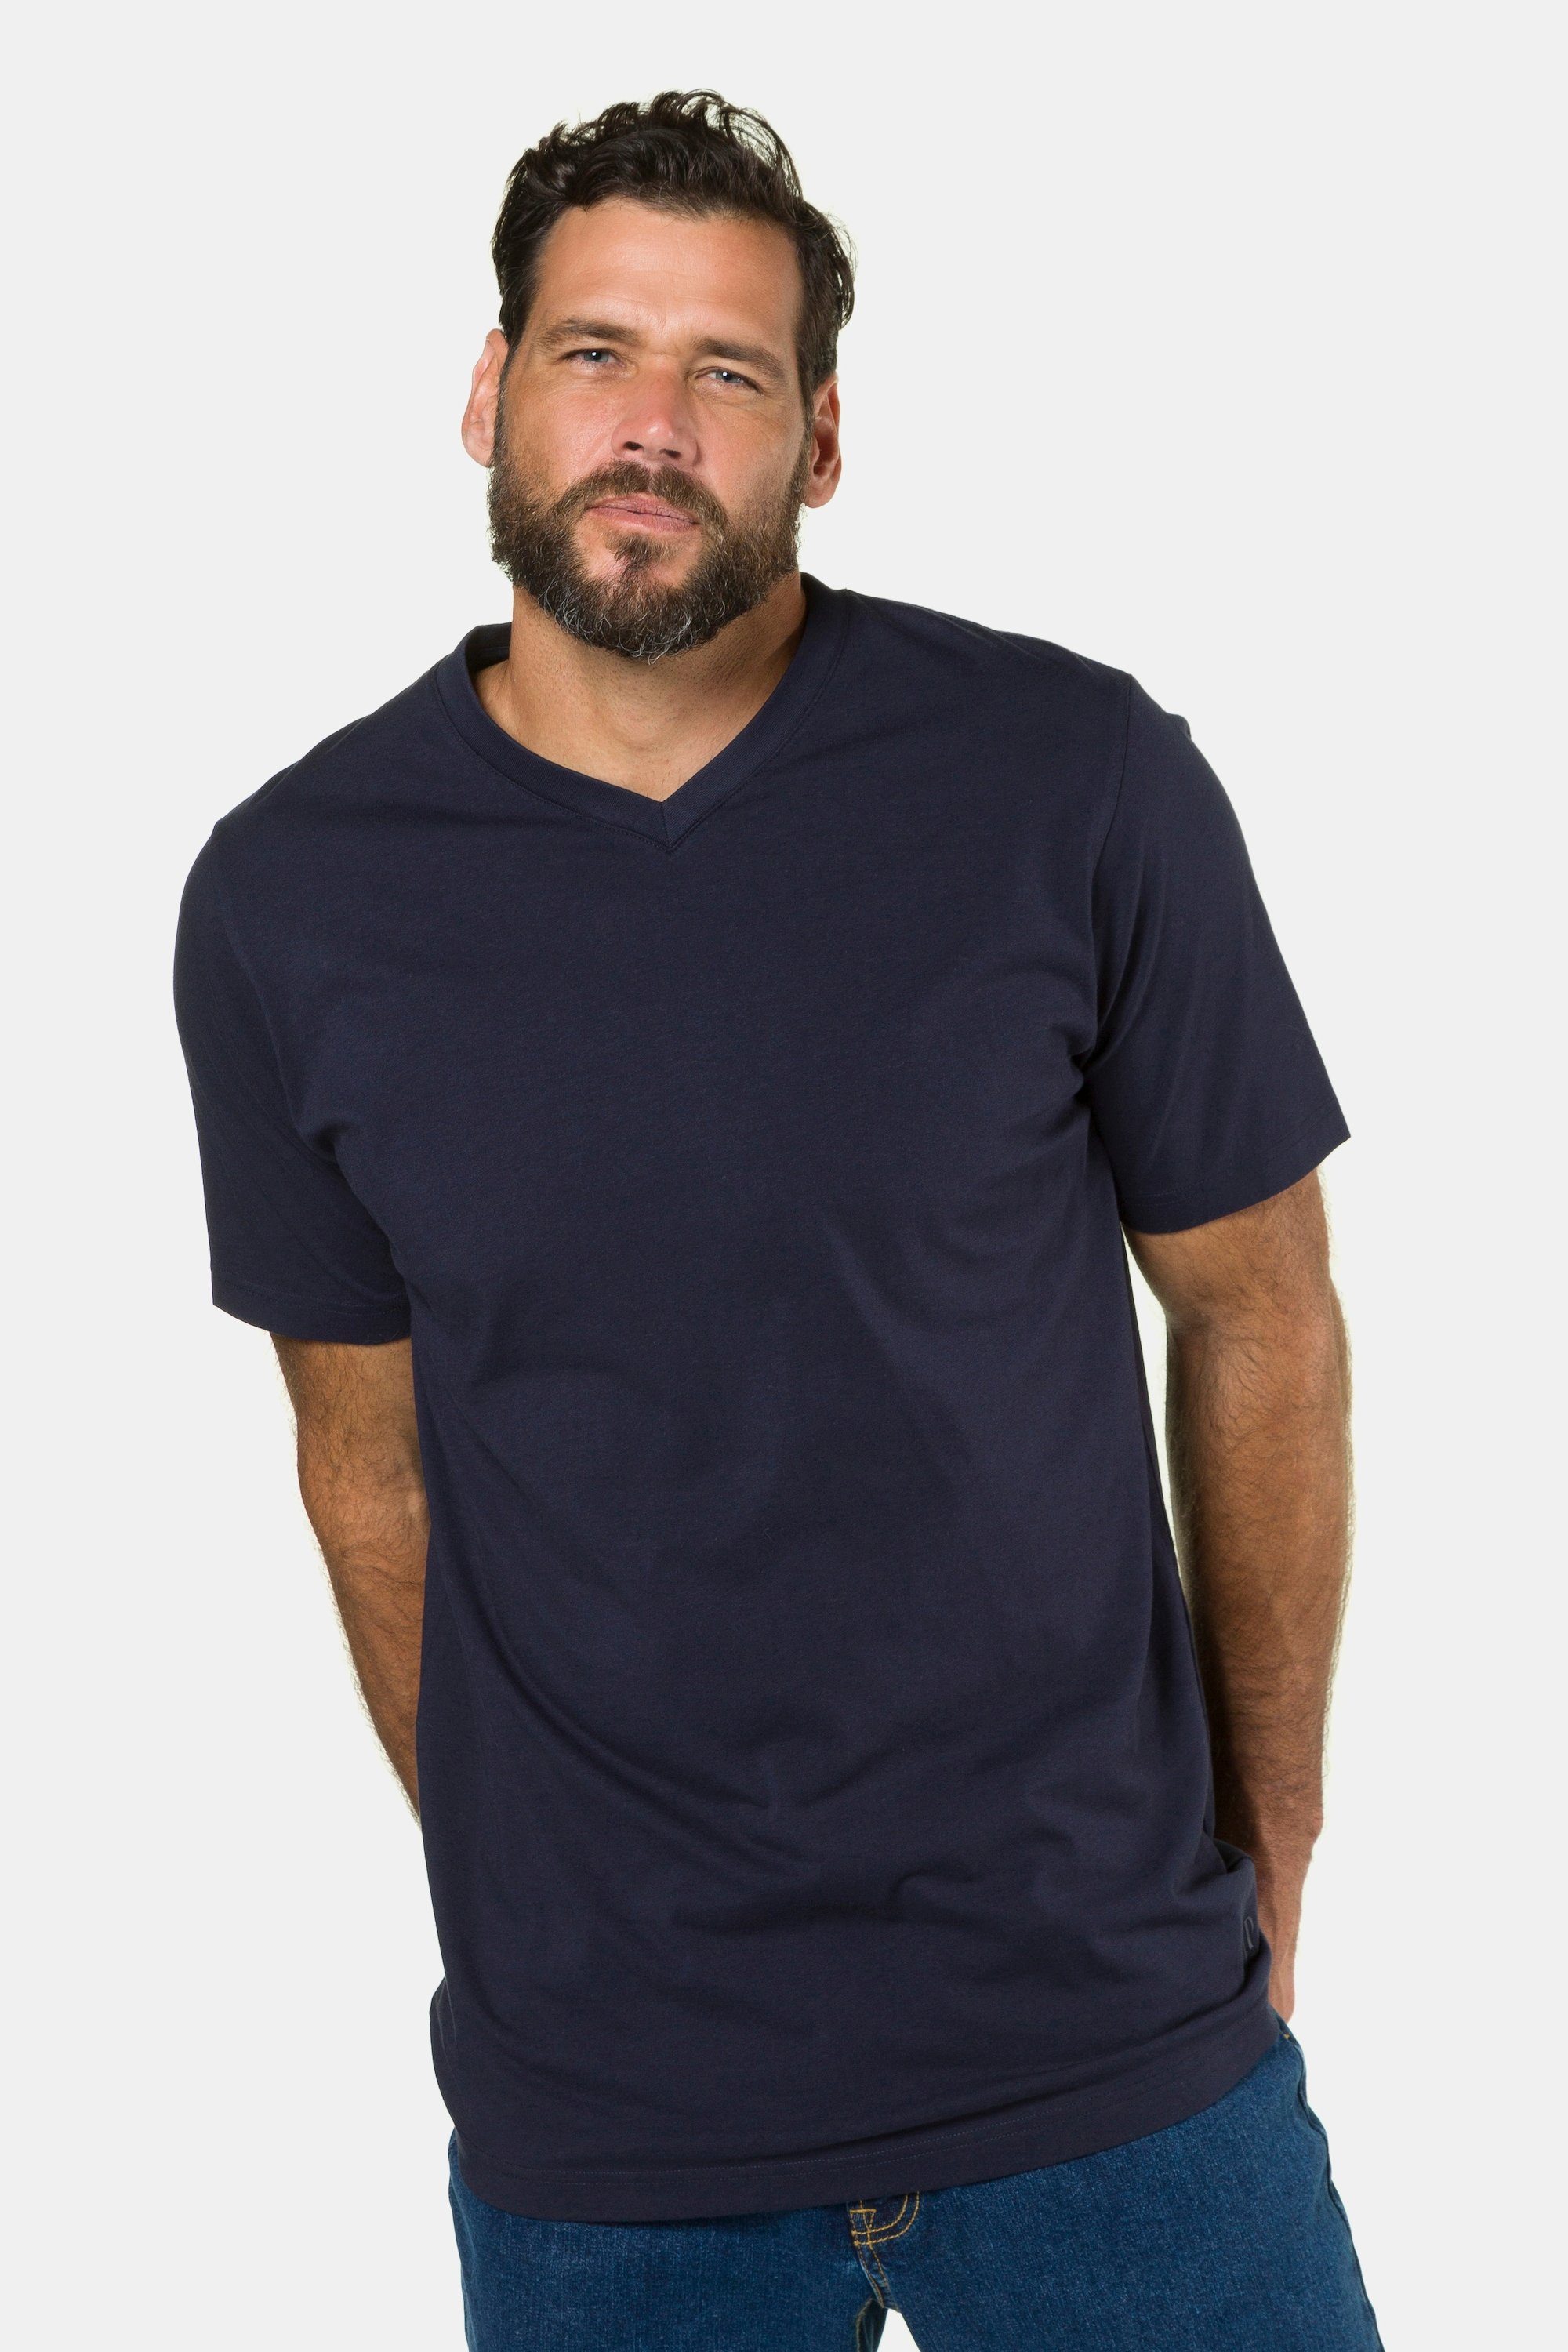 JP1880 marine bis T-Shirt T-Shirt Basic V-Ausschnitt dunkel 8XL